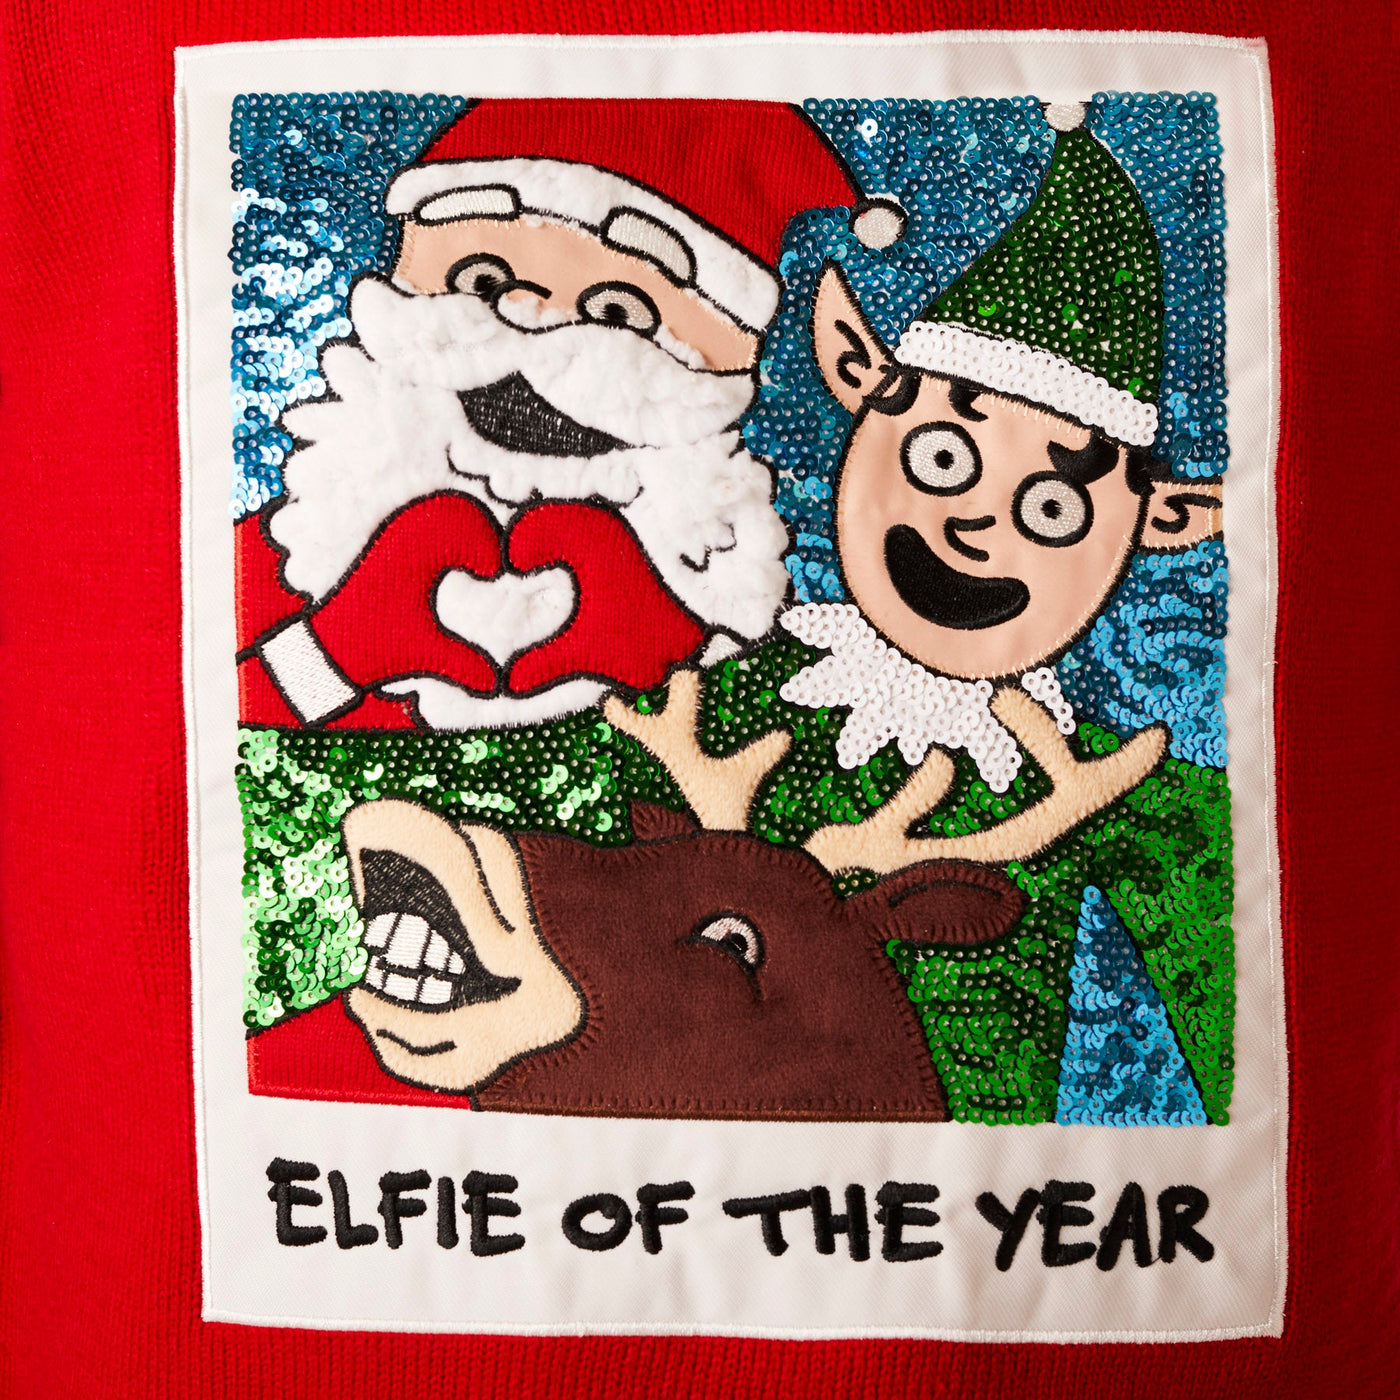 Men's Elfie Christmas Sweater